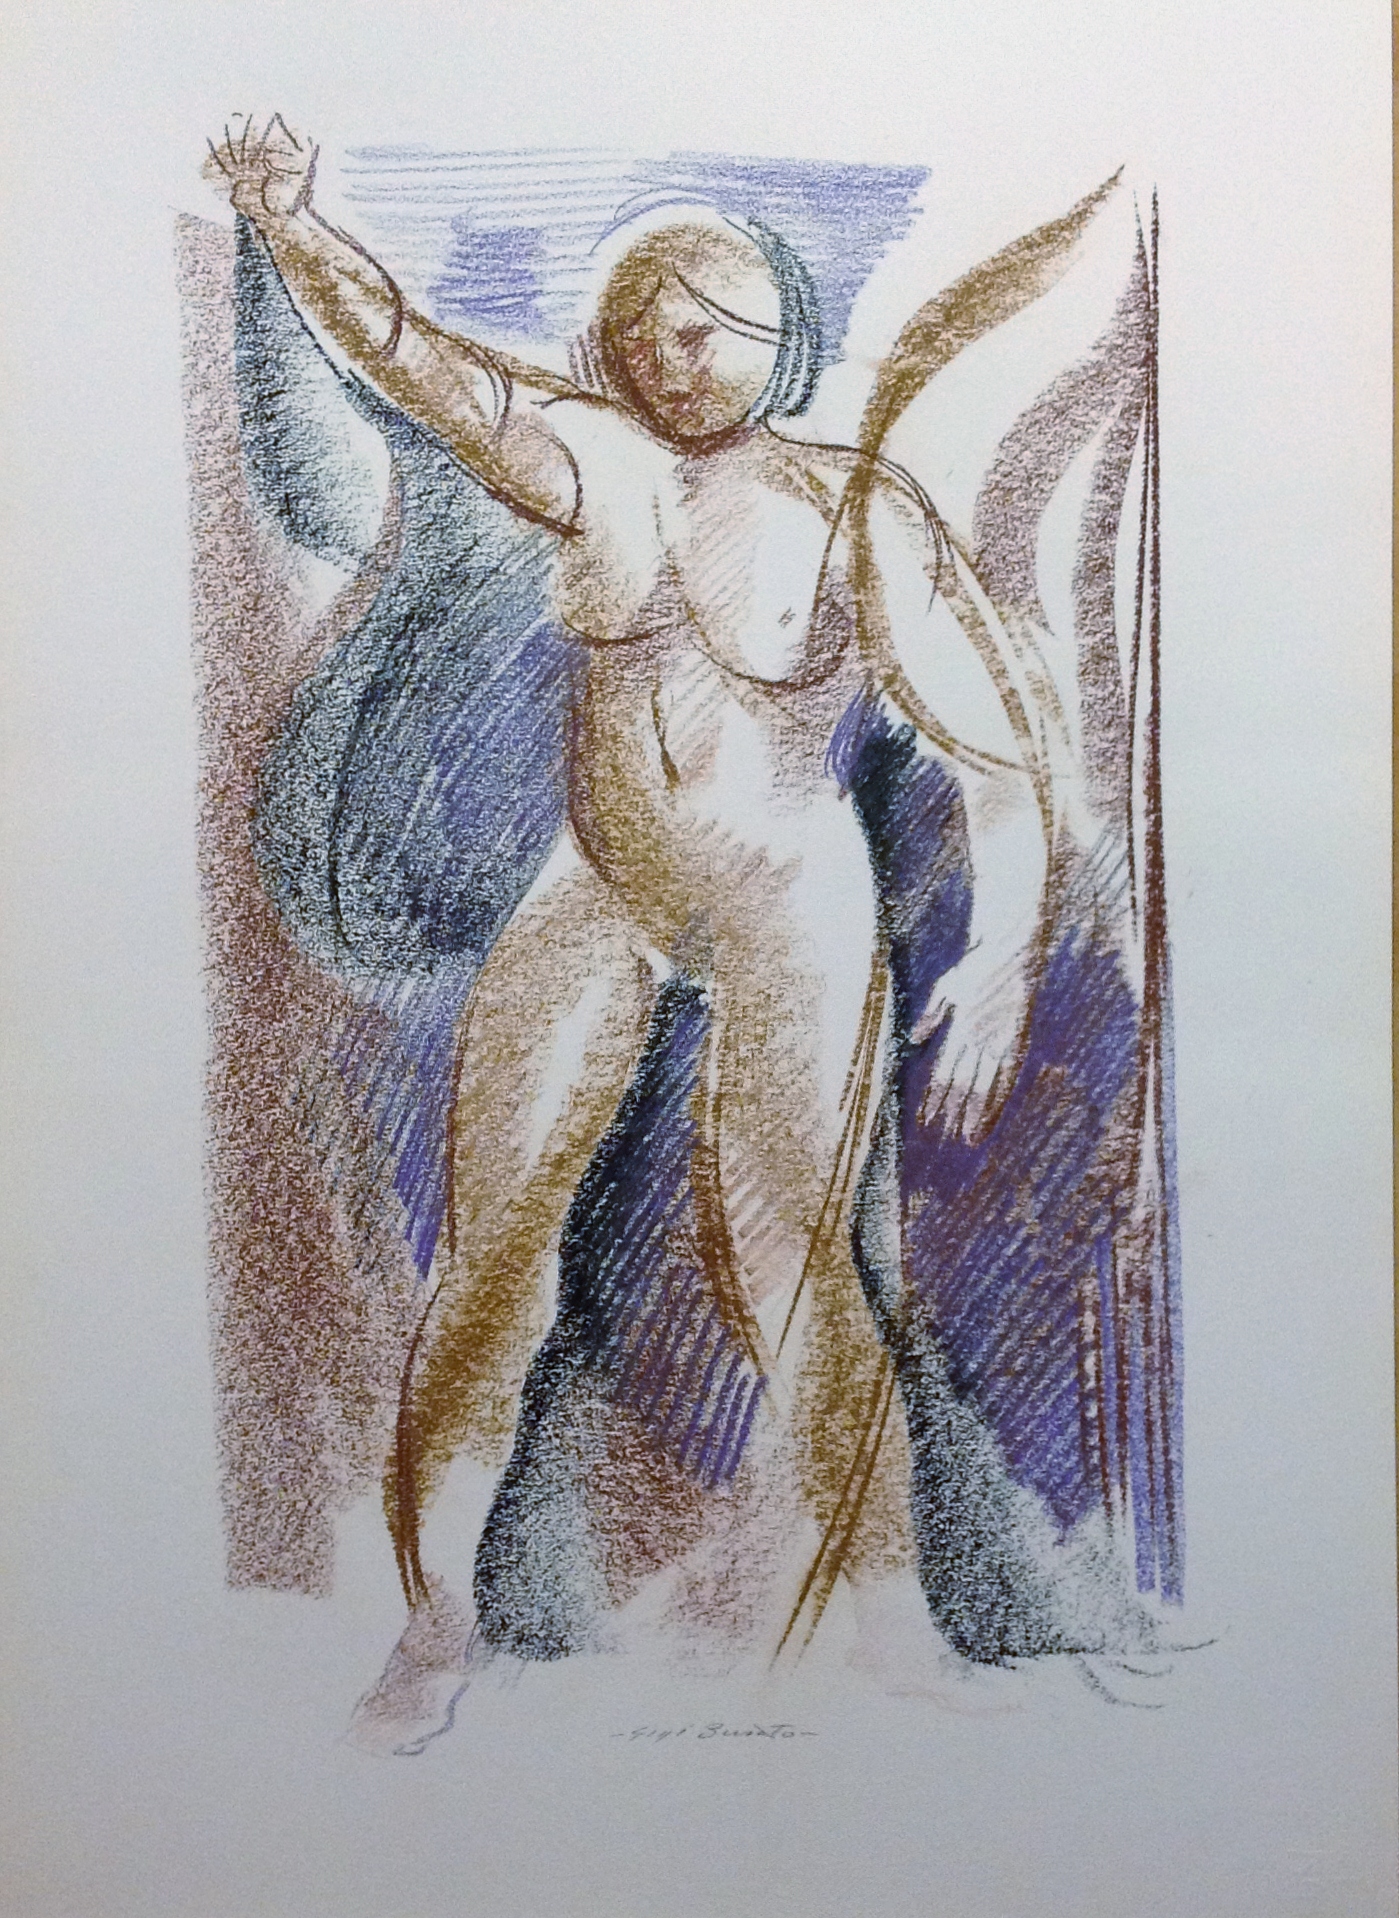 Il pugno disegno astratto di donna nuda di Gigi Busato, disegno a pastello su carta a colori collezione di famiglia